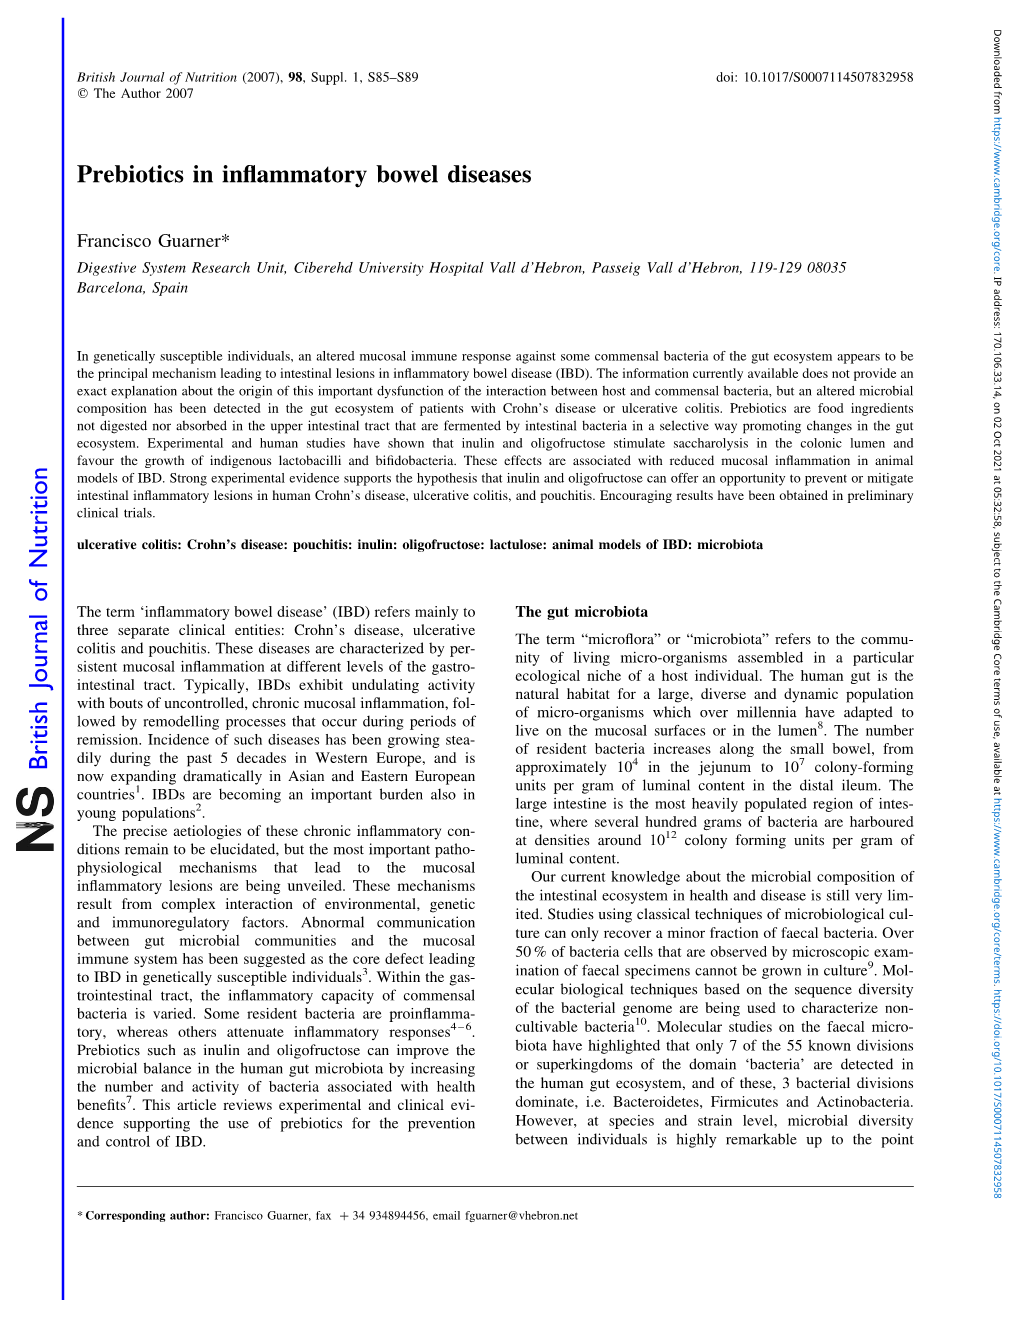 Prebiotics in Inflammatory Bowel Diseases